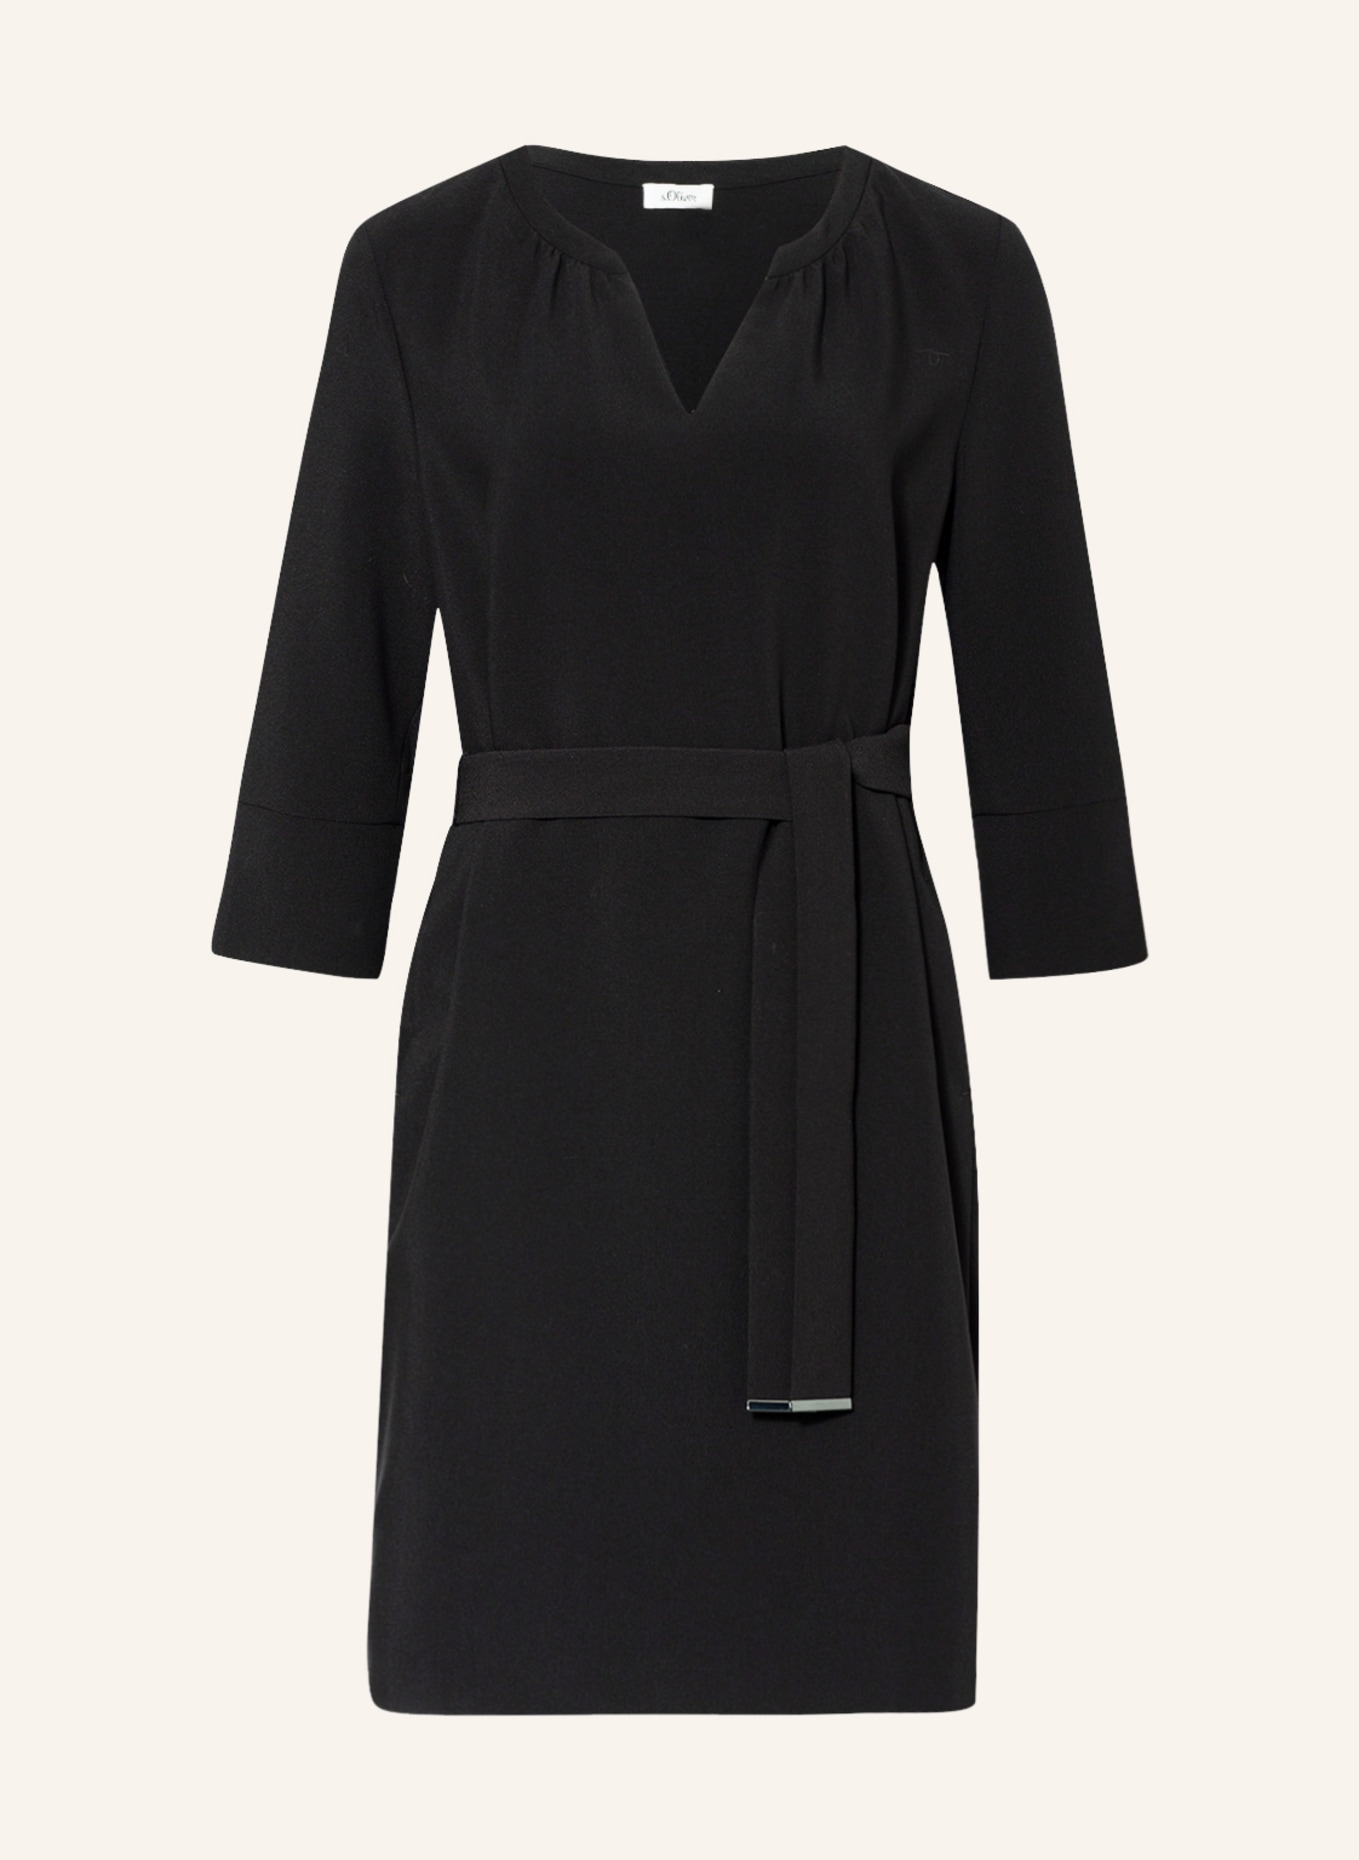 s.Oliver BLACK LABEL Dress with 3/4 sleeve, Color: BLACK (Image 1)